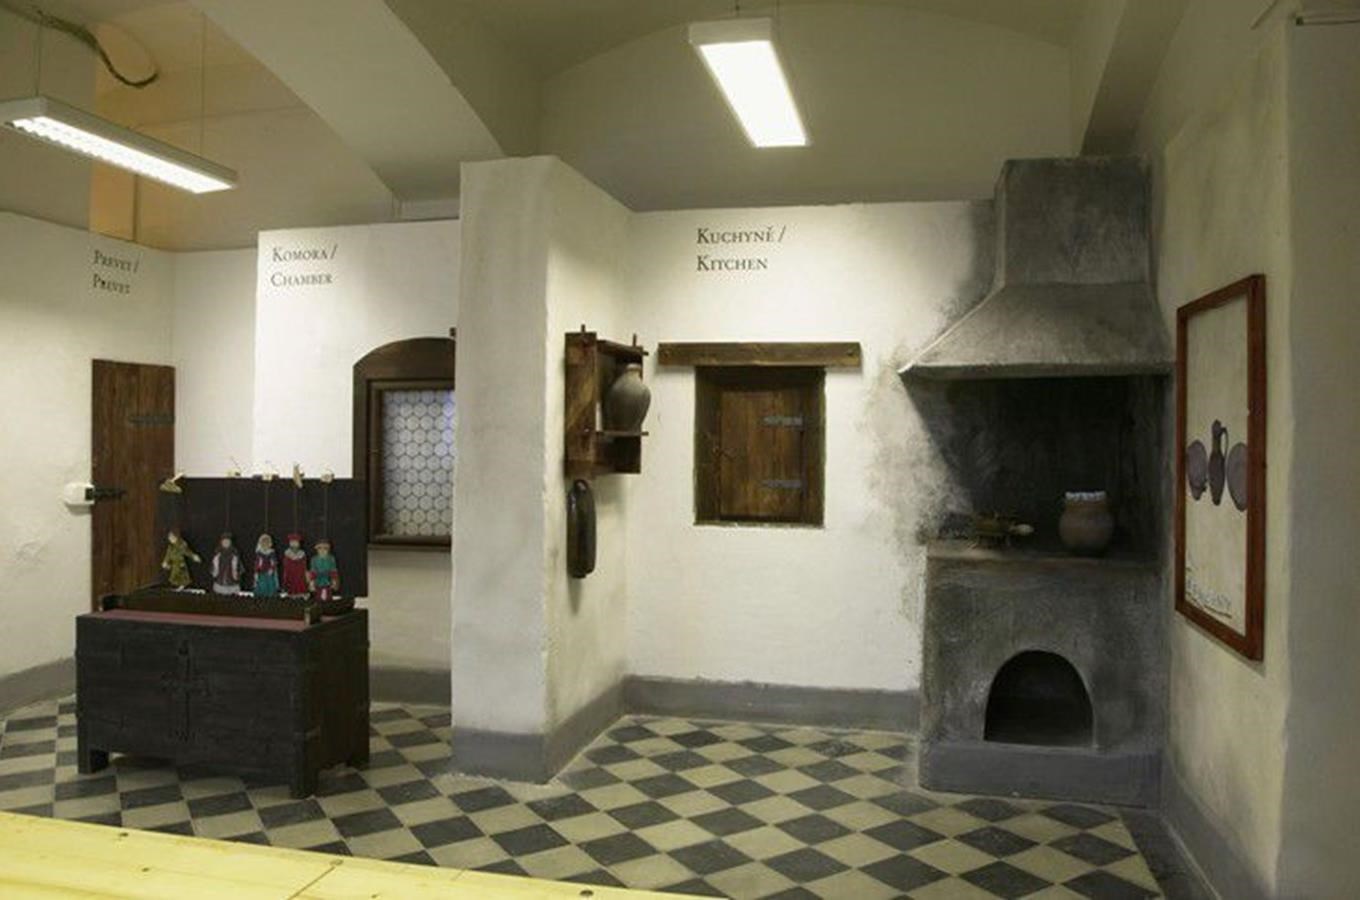 Vítejte ve středověkém domě - expozice Muzea hlavního města Prahy pro děti